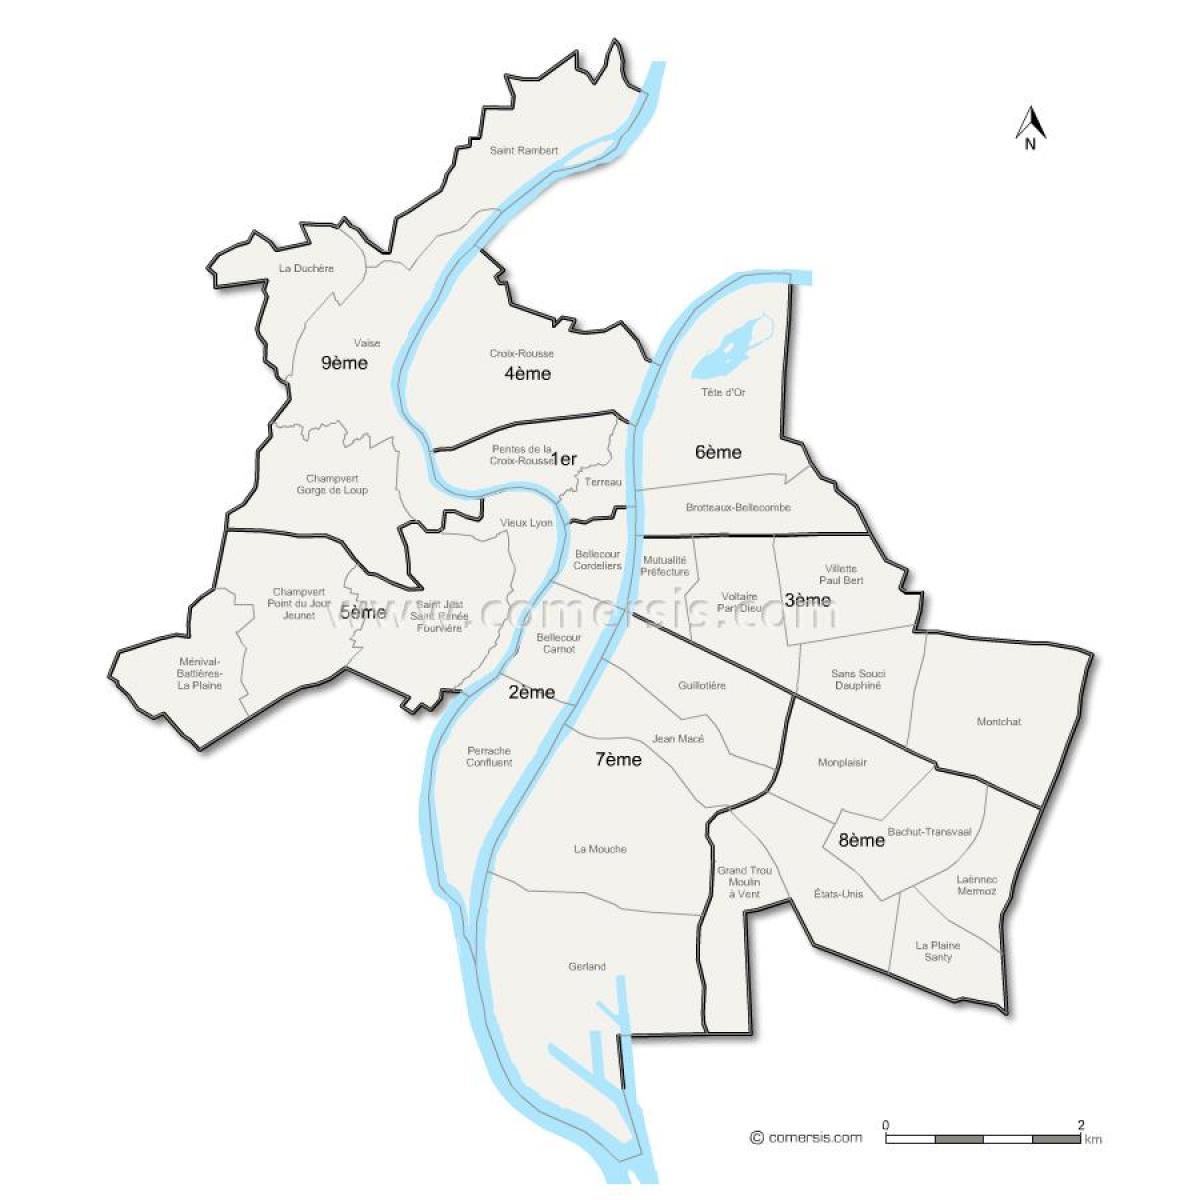 Karte von Lyon arrondissement